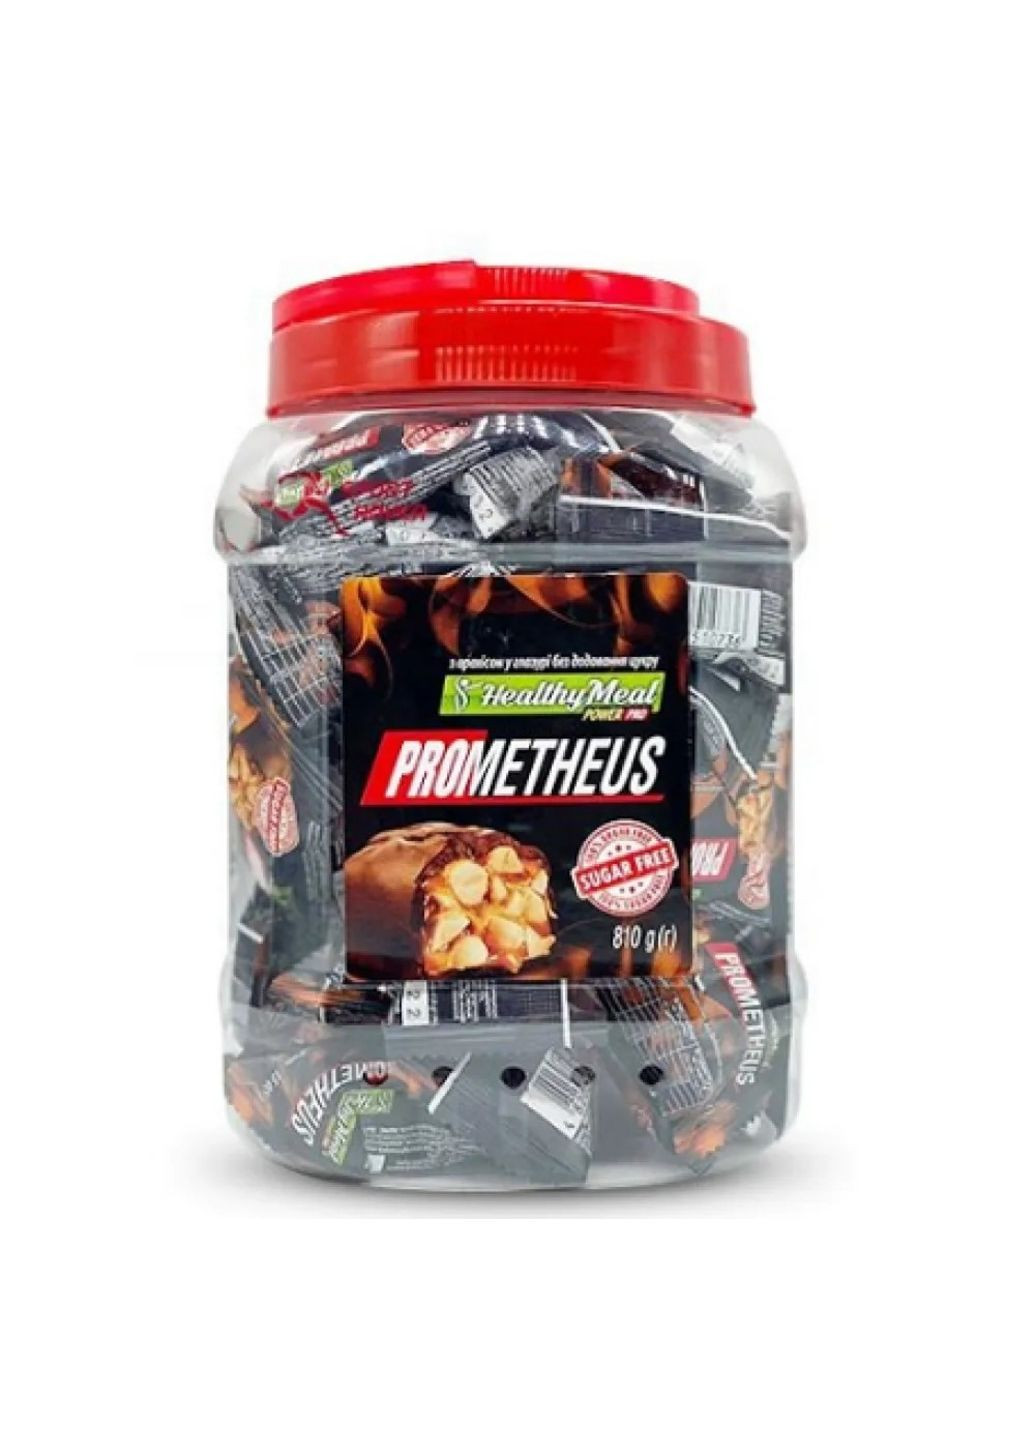 Prometheus sugar free - 810g полезные арахисовые конфеты Power Pro (291124787)